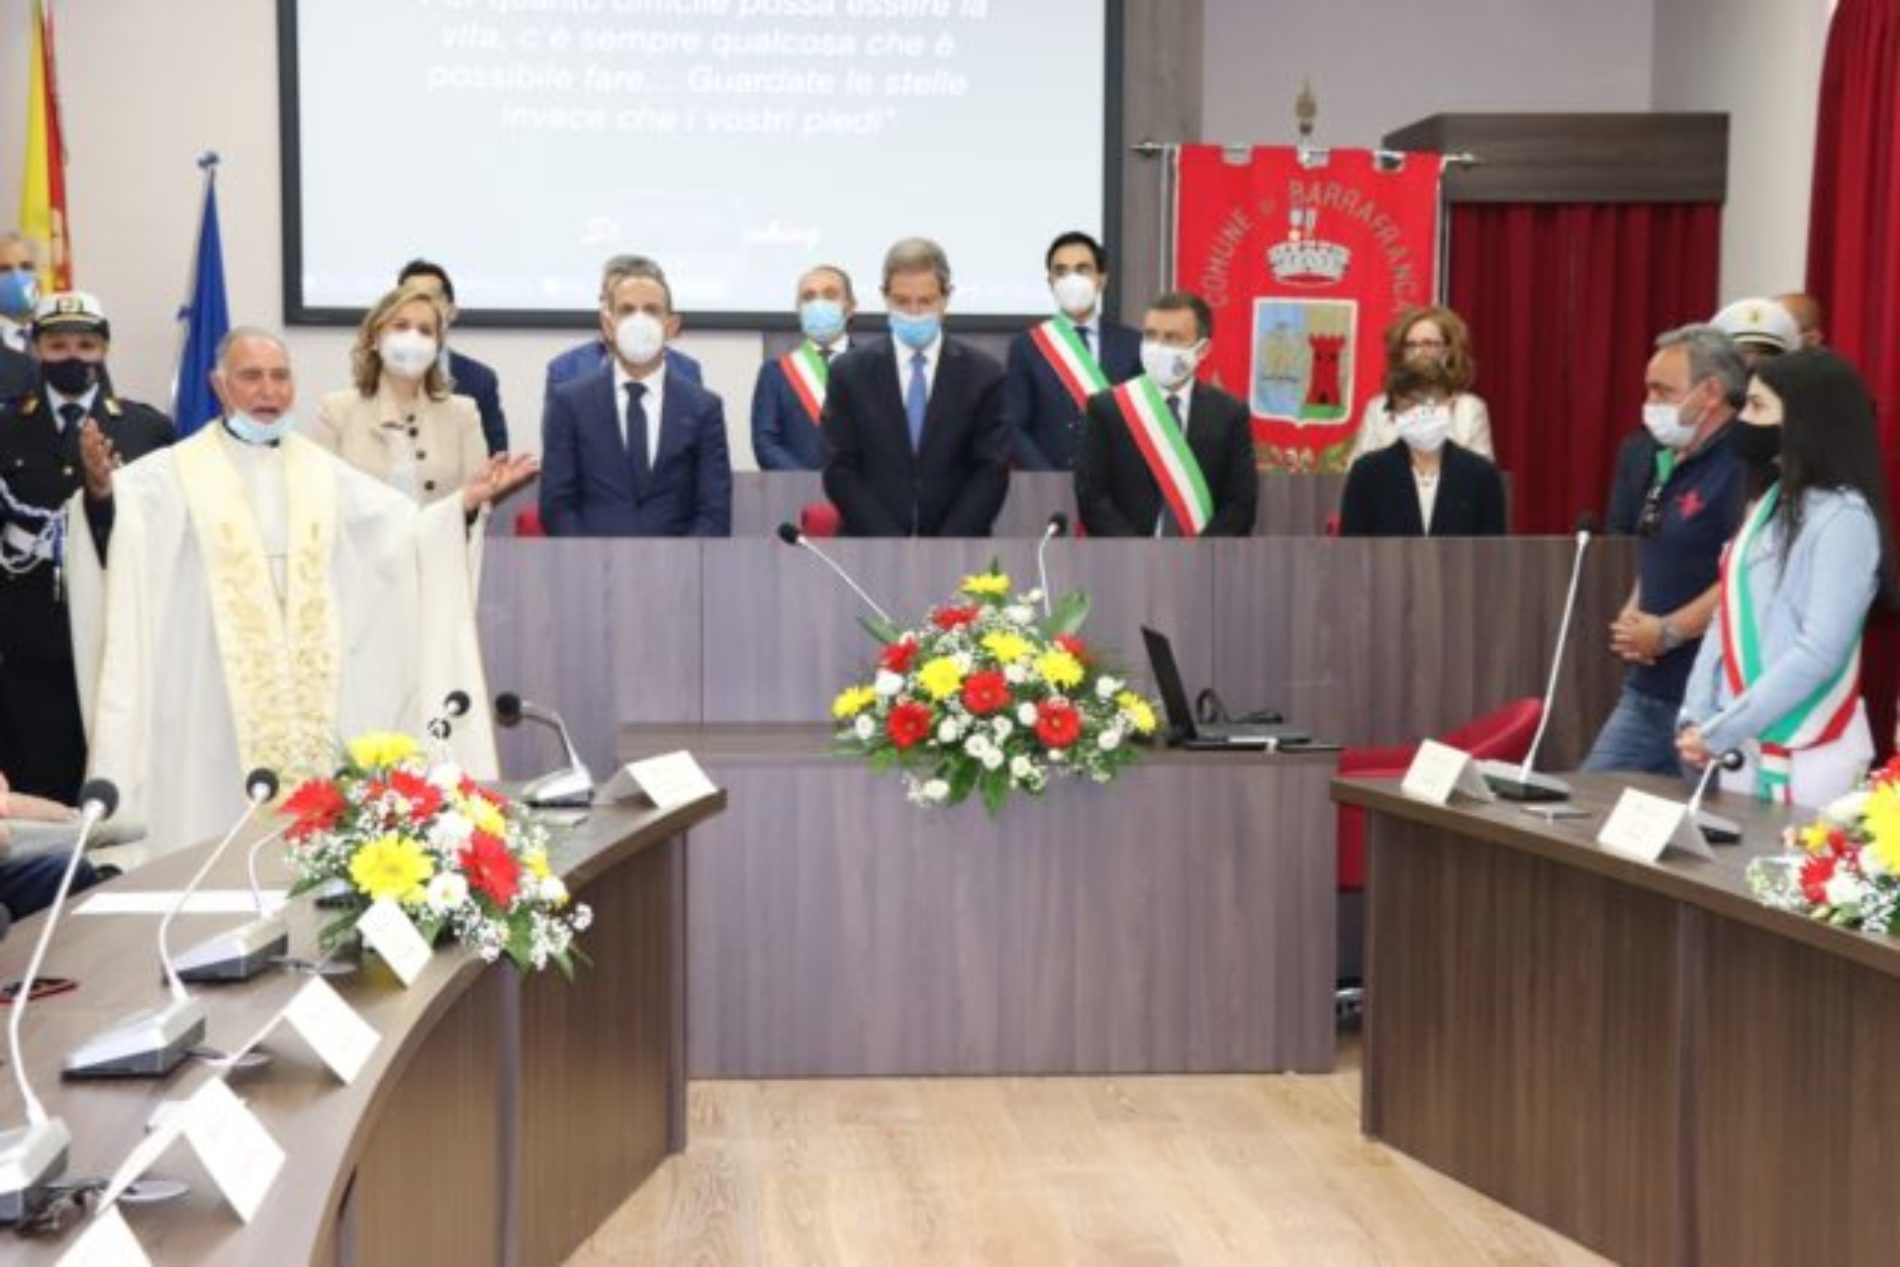 BARRAFRANCA. Inaugurata, presente l’onorevole Nello Musumeci, presidente della Regione, la nuova aula consiliare.